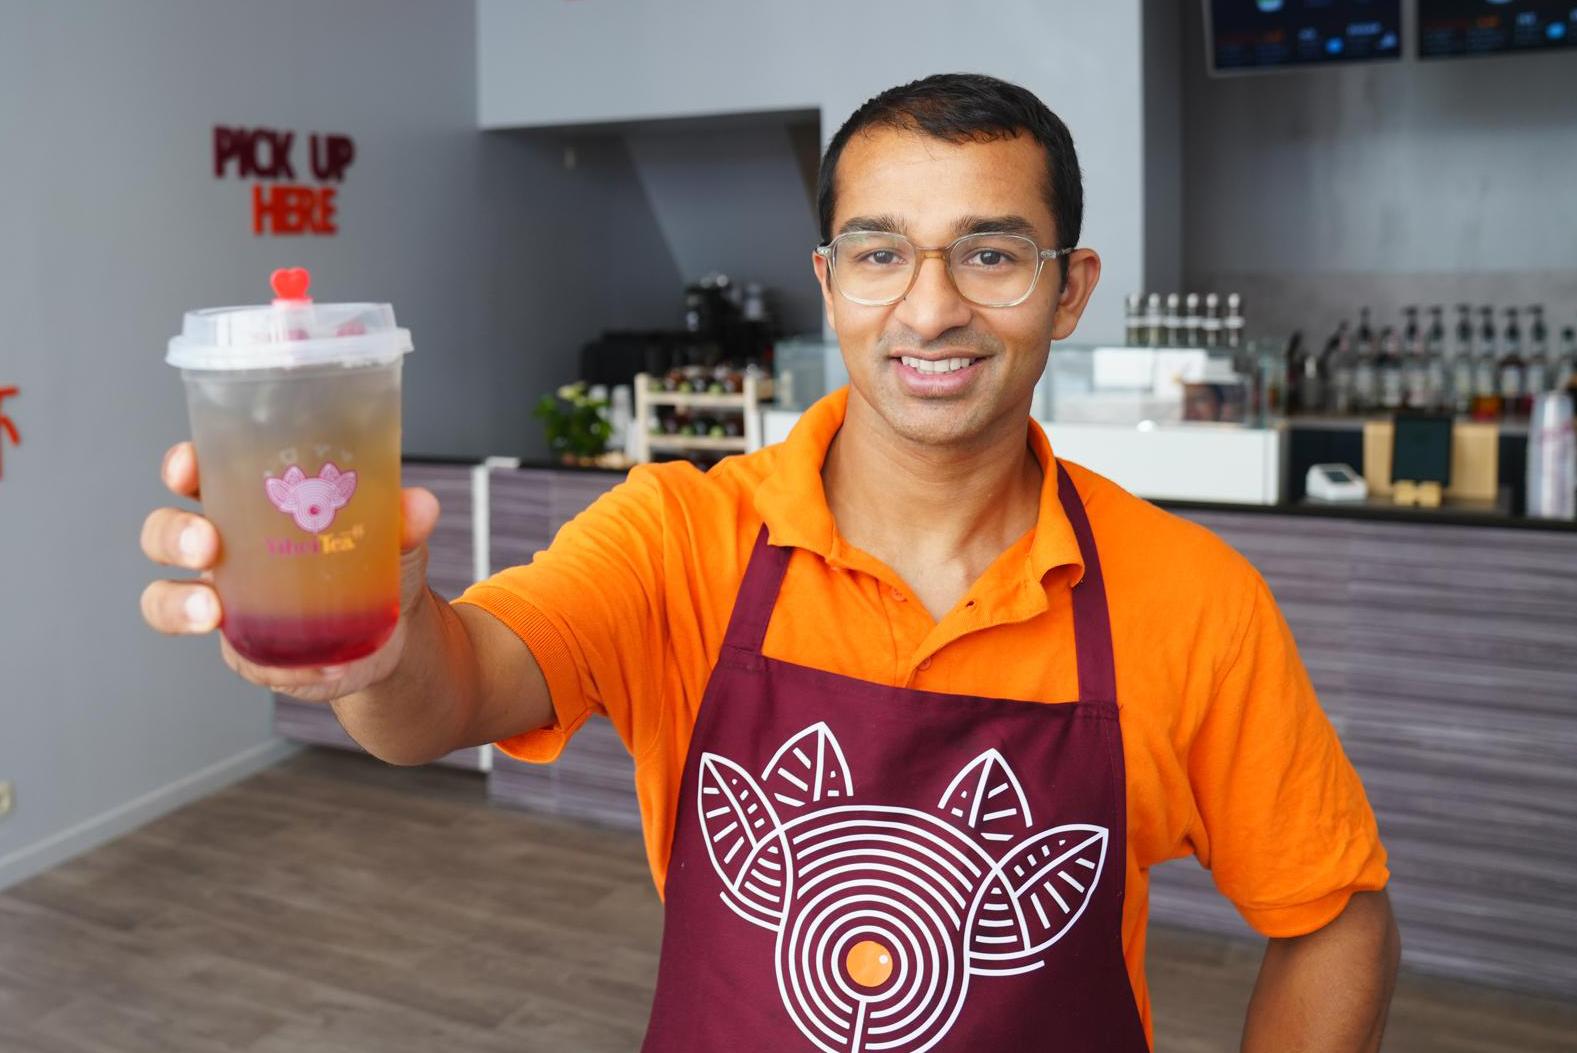 Naim (32) membuka ‘bubble tea bar’ baru: “Terbang ke Indonesia khusus untuk melakukan penelitian” (Gent)